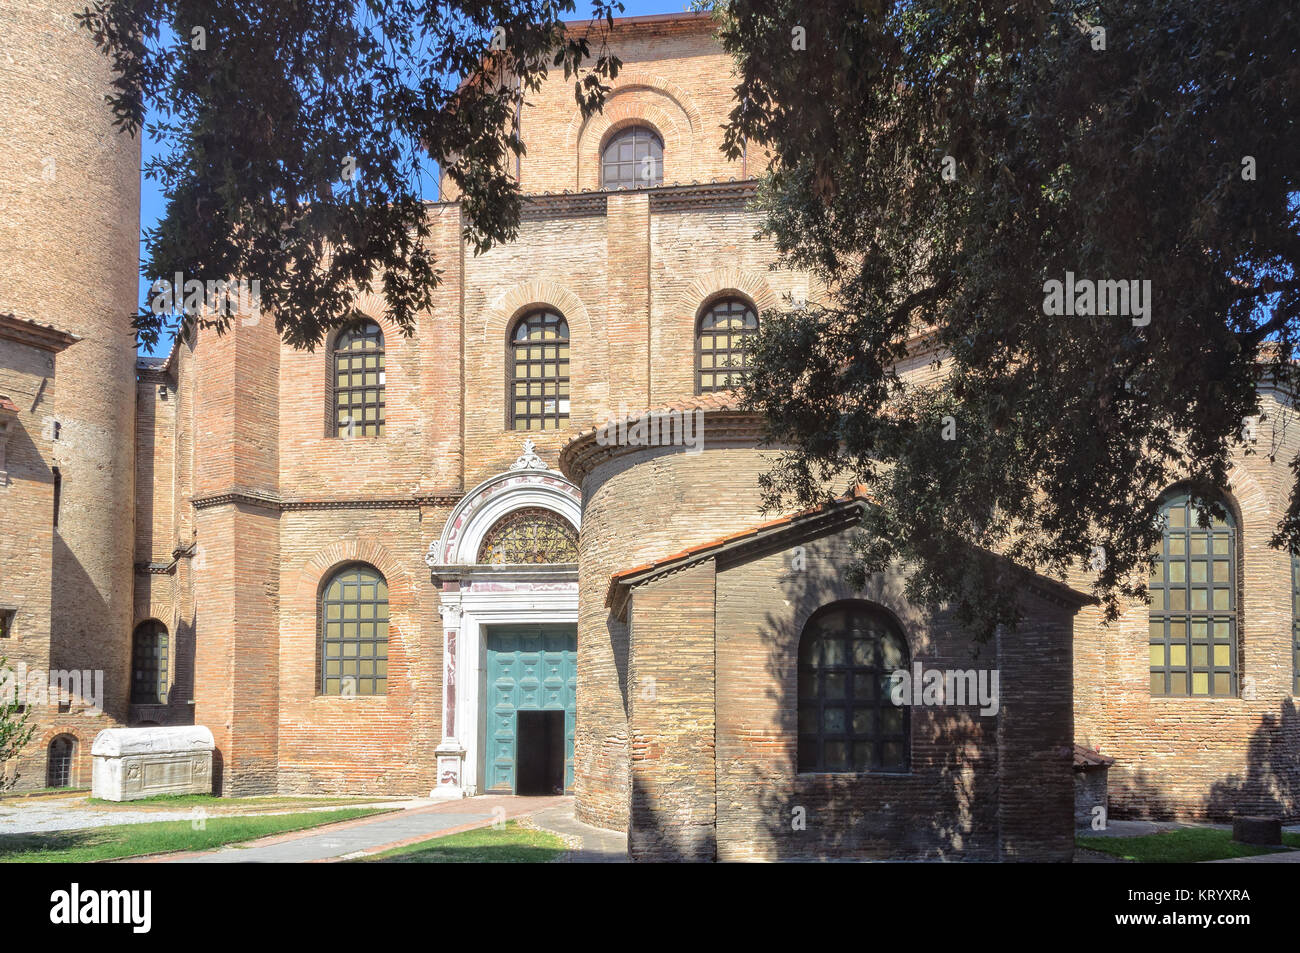 La pianta ottagonale Basilica di San Vitale è un bellissimo esempio di prima architettura cristiana - Ravenna, Italia Foto Stock